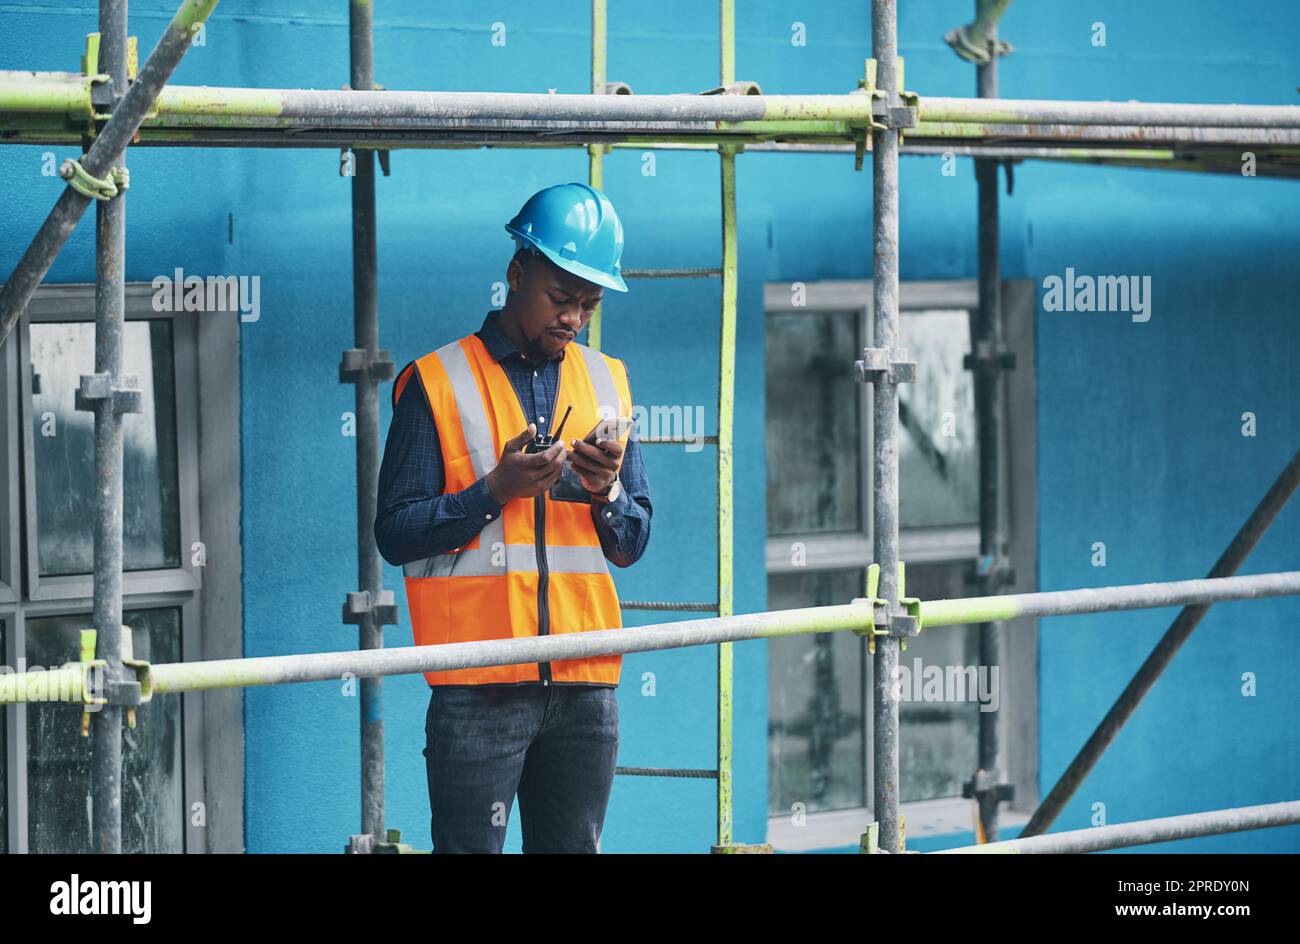 Homme de construction travaillant à vérifier un plan de bâtiment numérique sur un téléphone. Un constructeur d'aménagement urbain très occupé qui étudie les données de planification des bâtiments pour fournir de l'information à l'industrie sur une radio professionnelle Banque D'Images